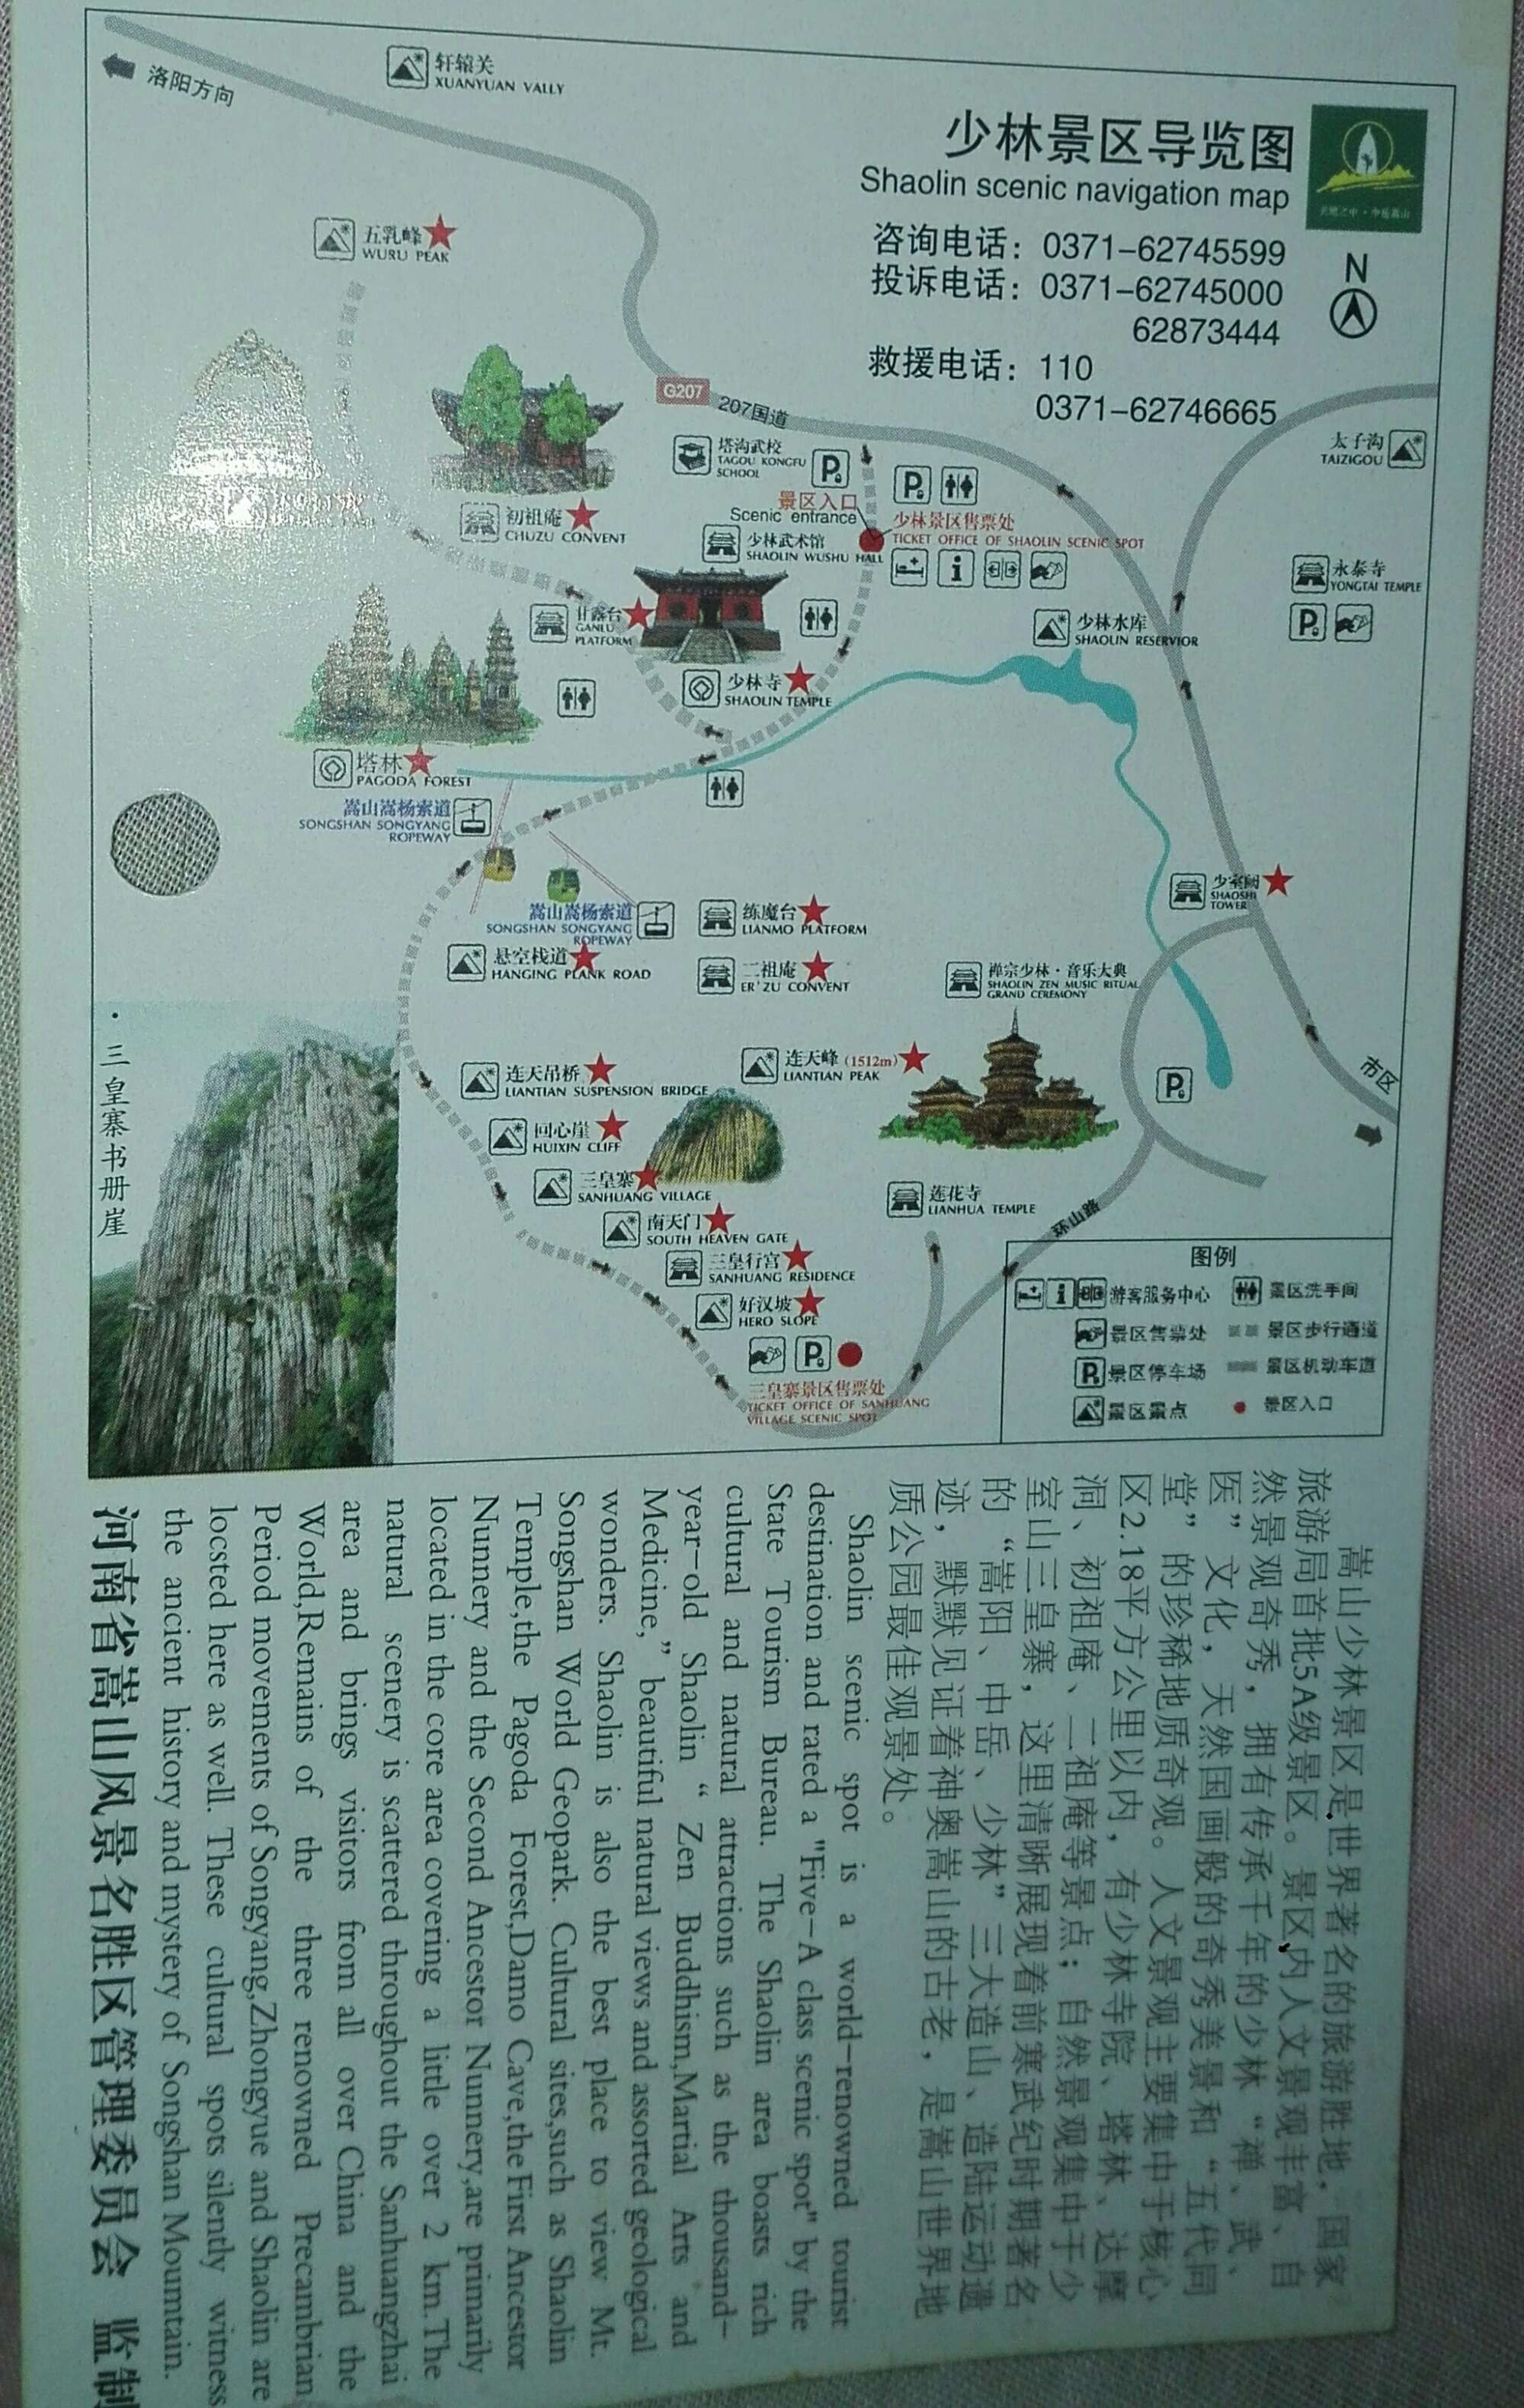 少林寺旅游路线示意图图片